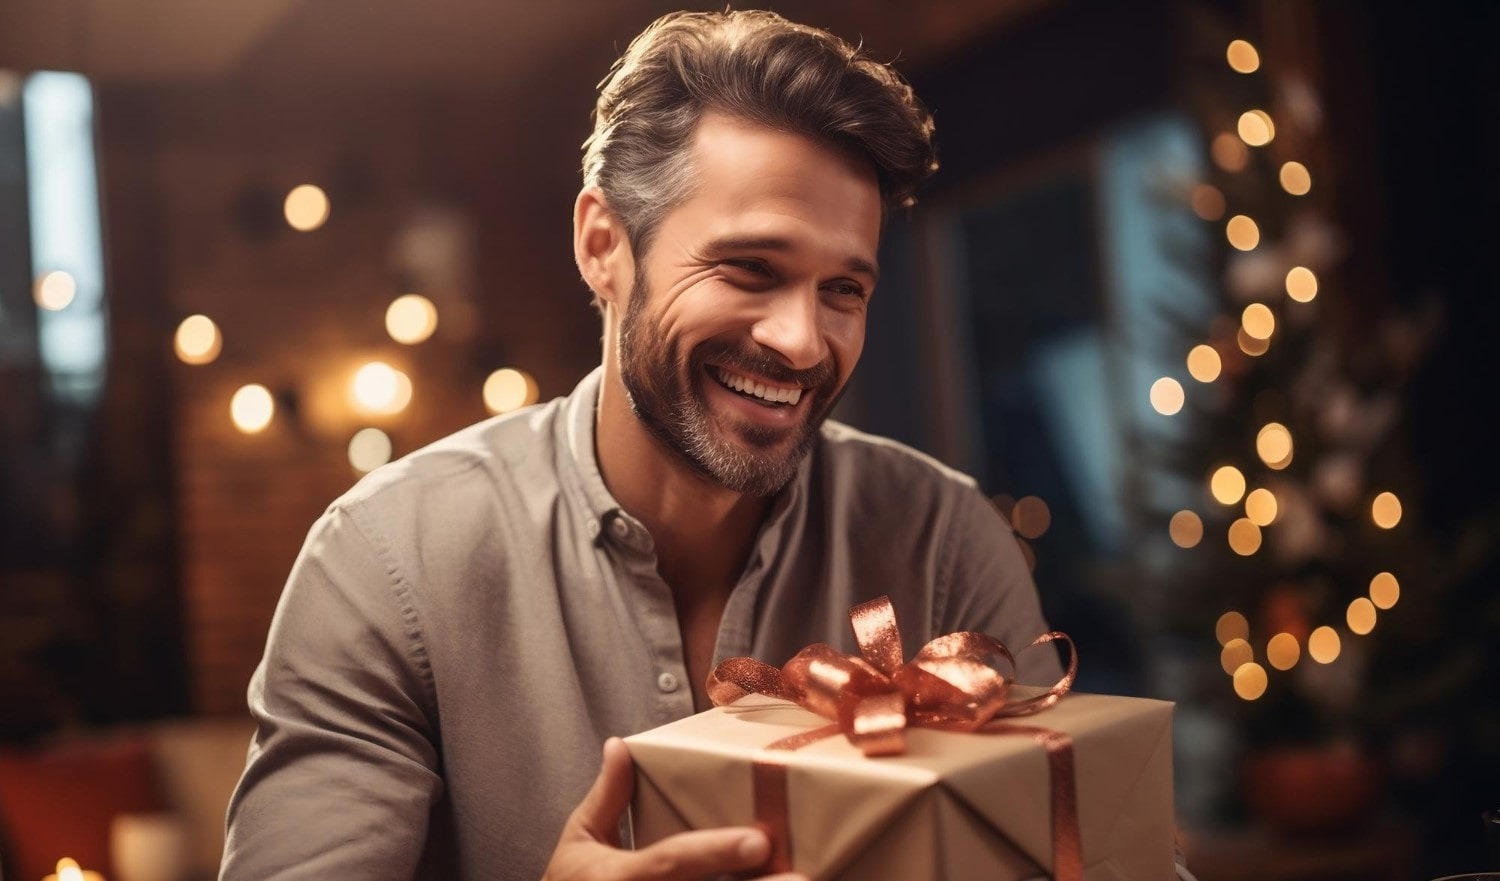 Τα καλύτερα χριστουγεννιάτικα δώρα για άντρες